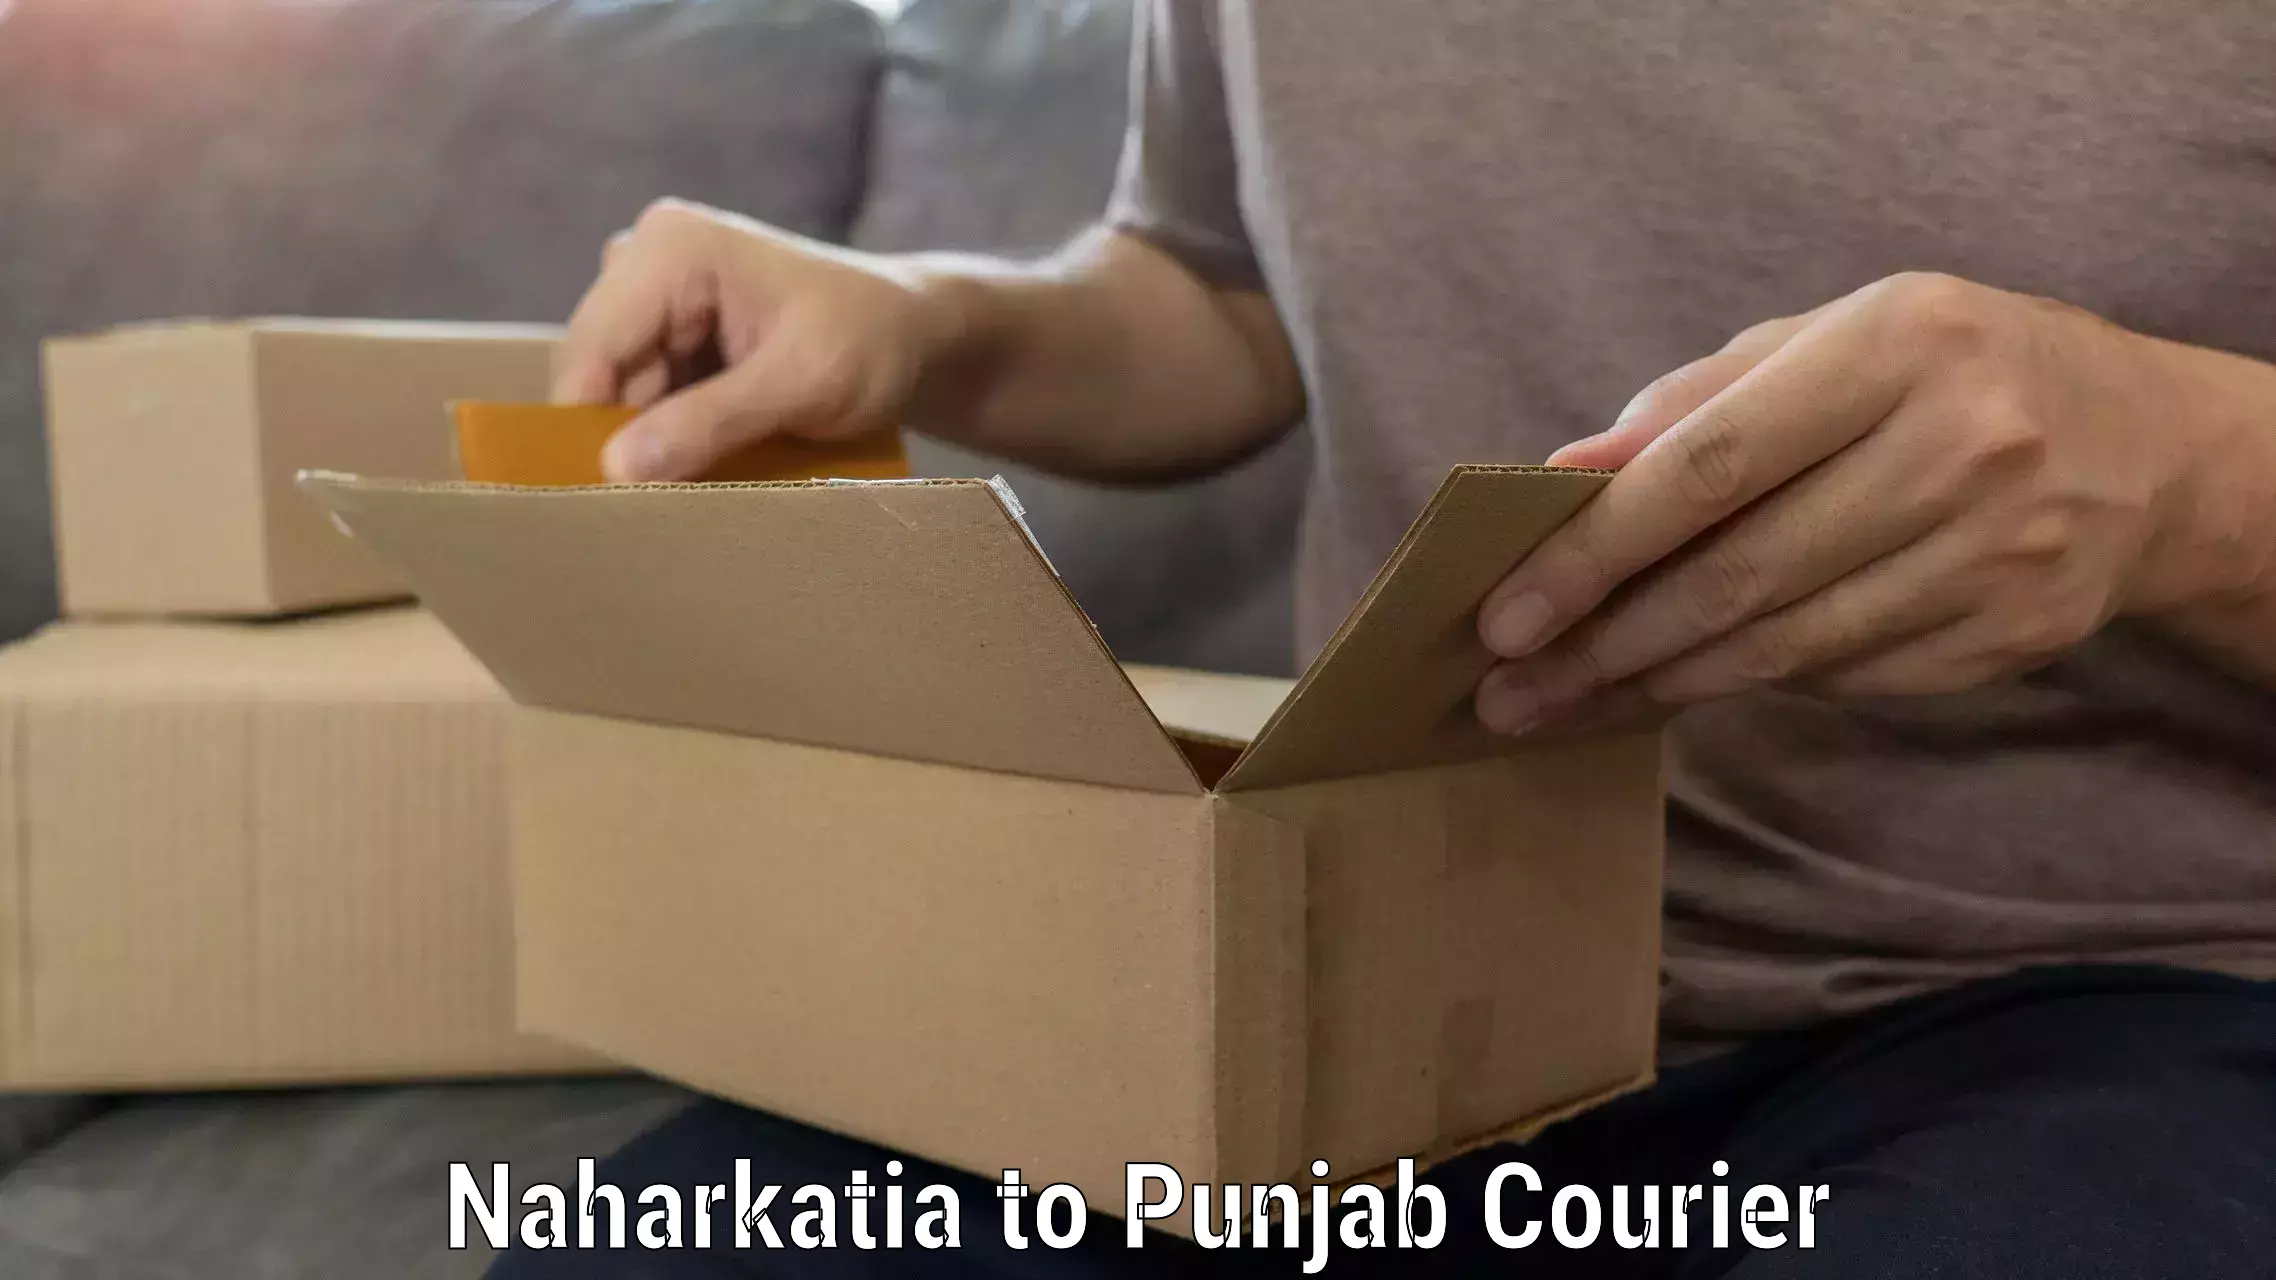 Expert furniture movers Naharkatia to Punjab